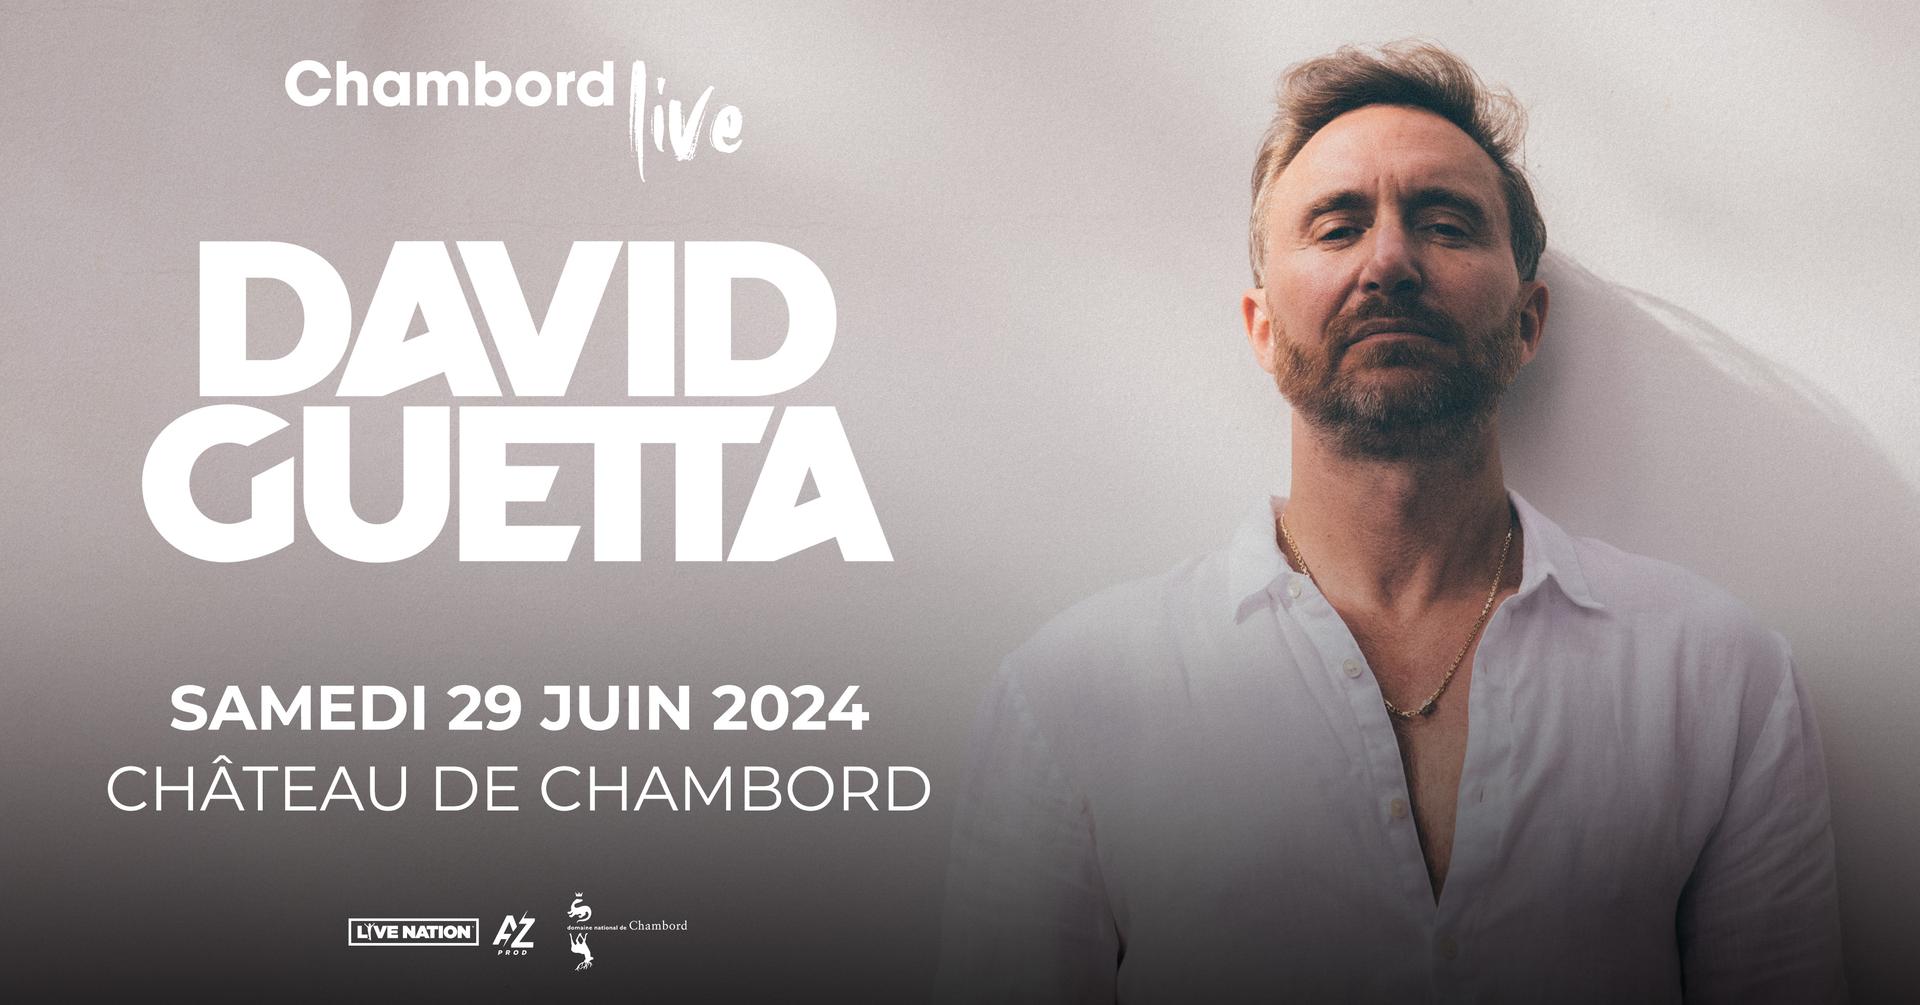 David Guetta - Chambord Live 2024 al Chateau de Chambord Tickets